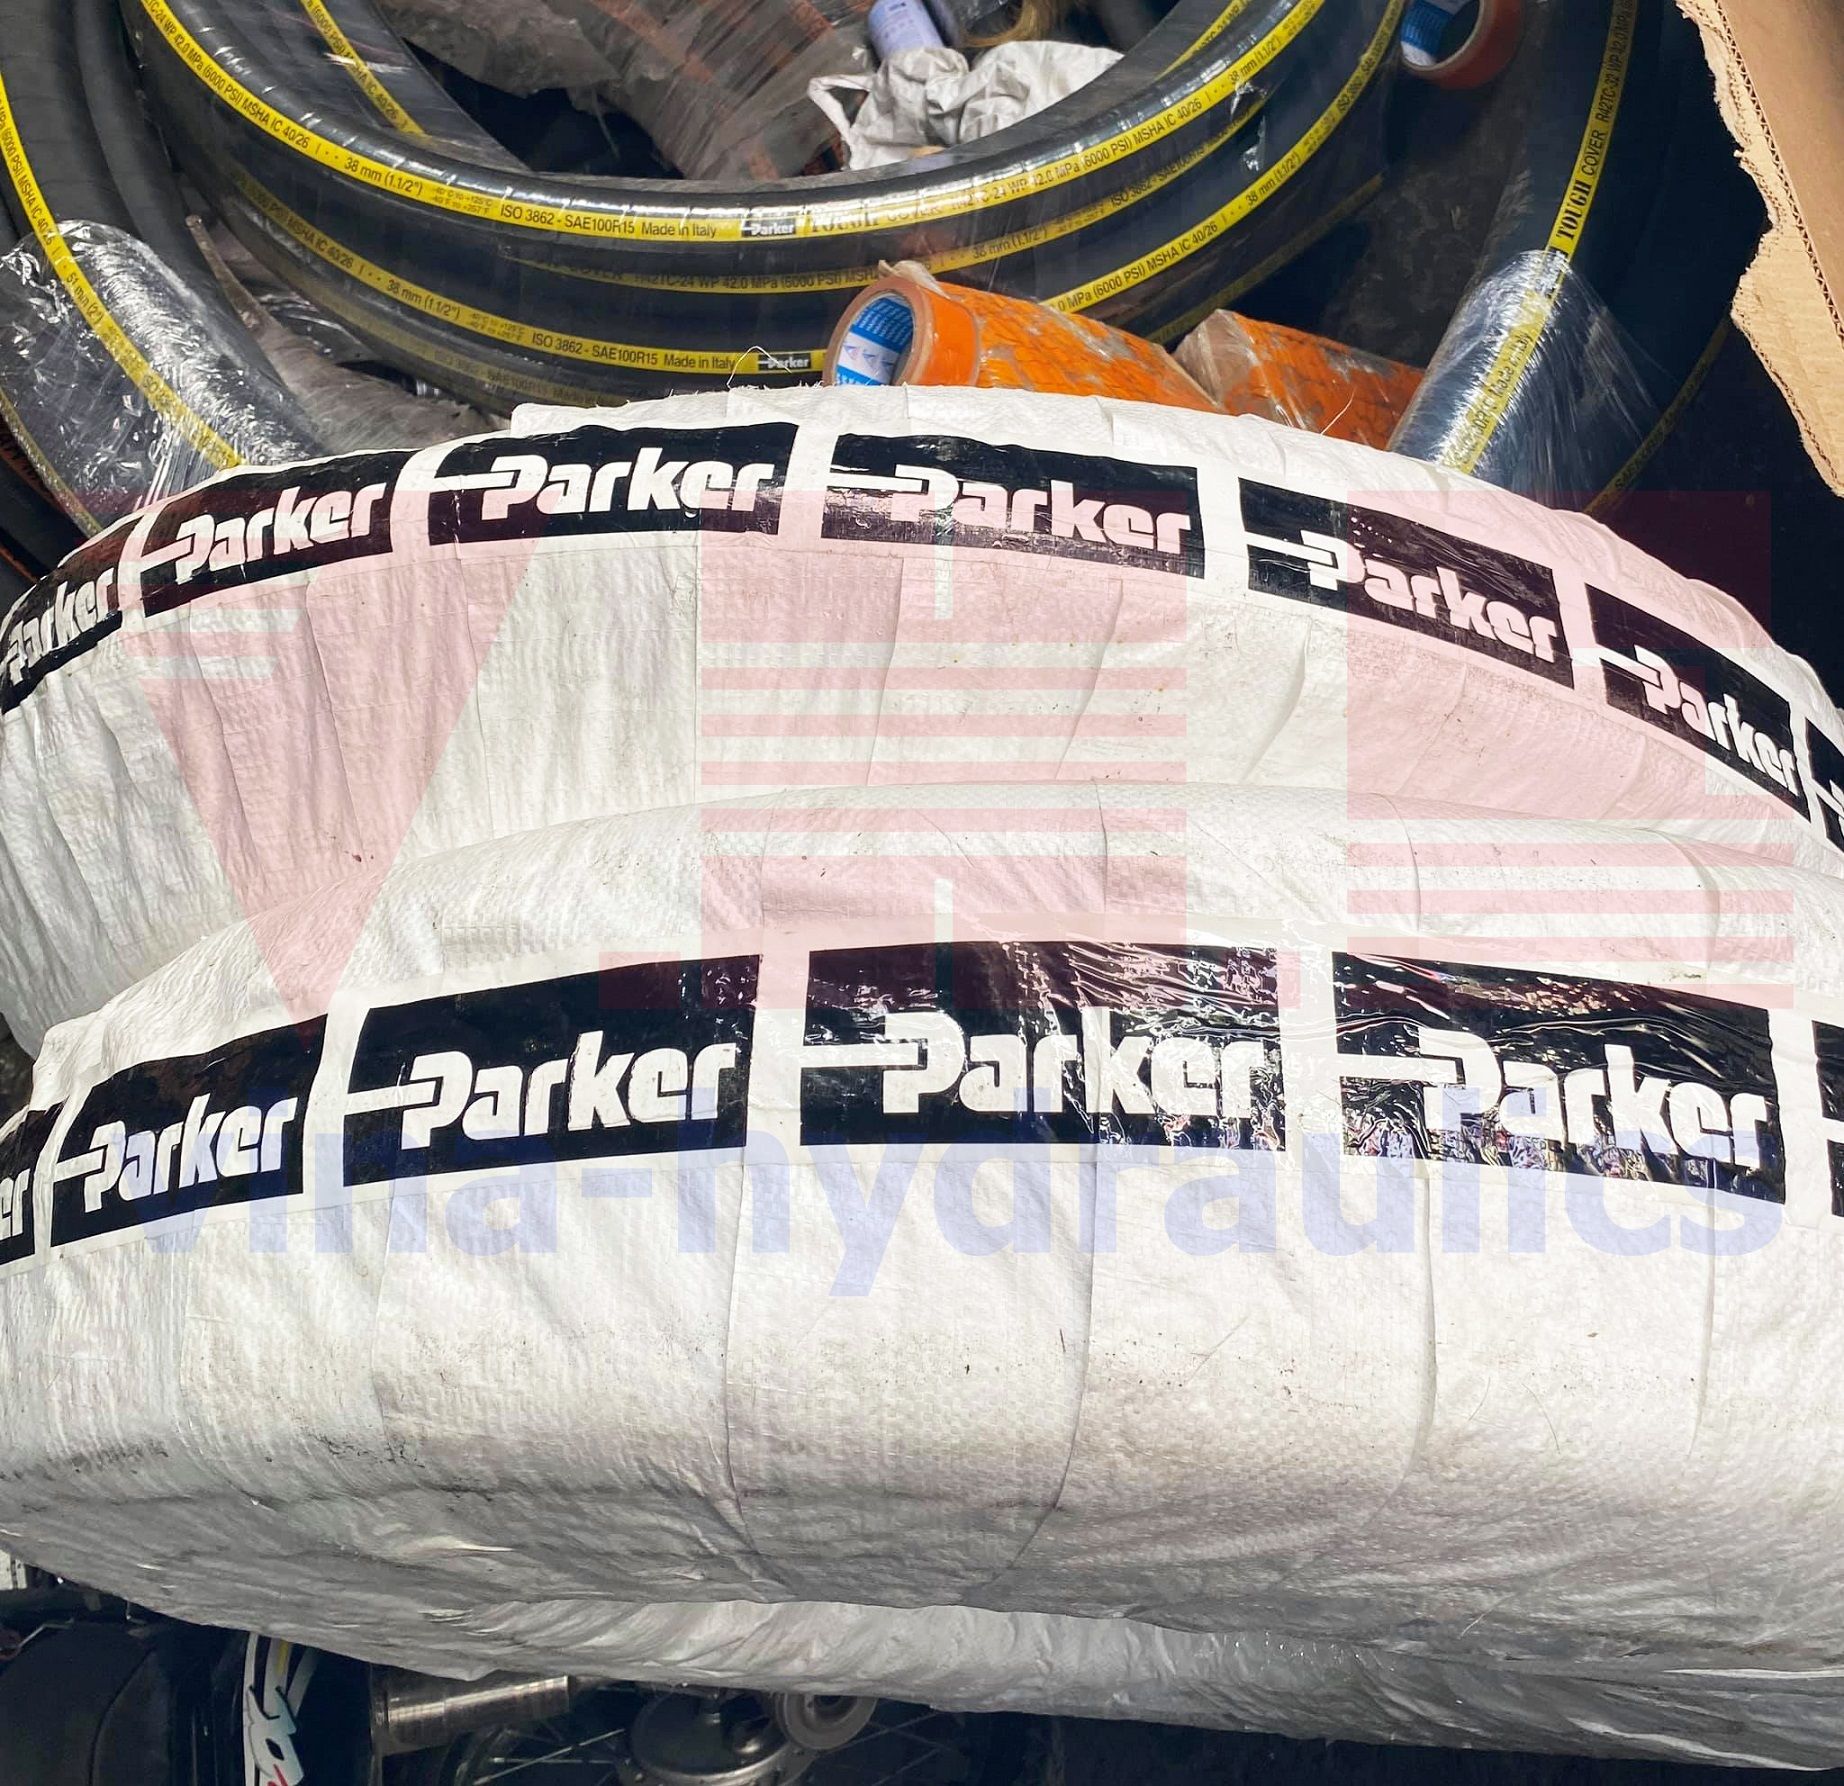 VHE cung cấp Ống thủy lực Parker chính hãng